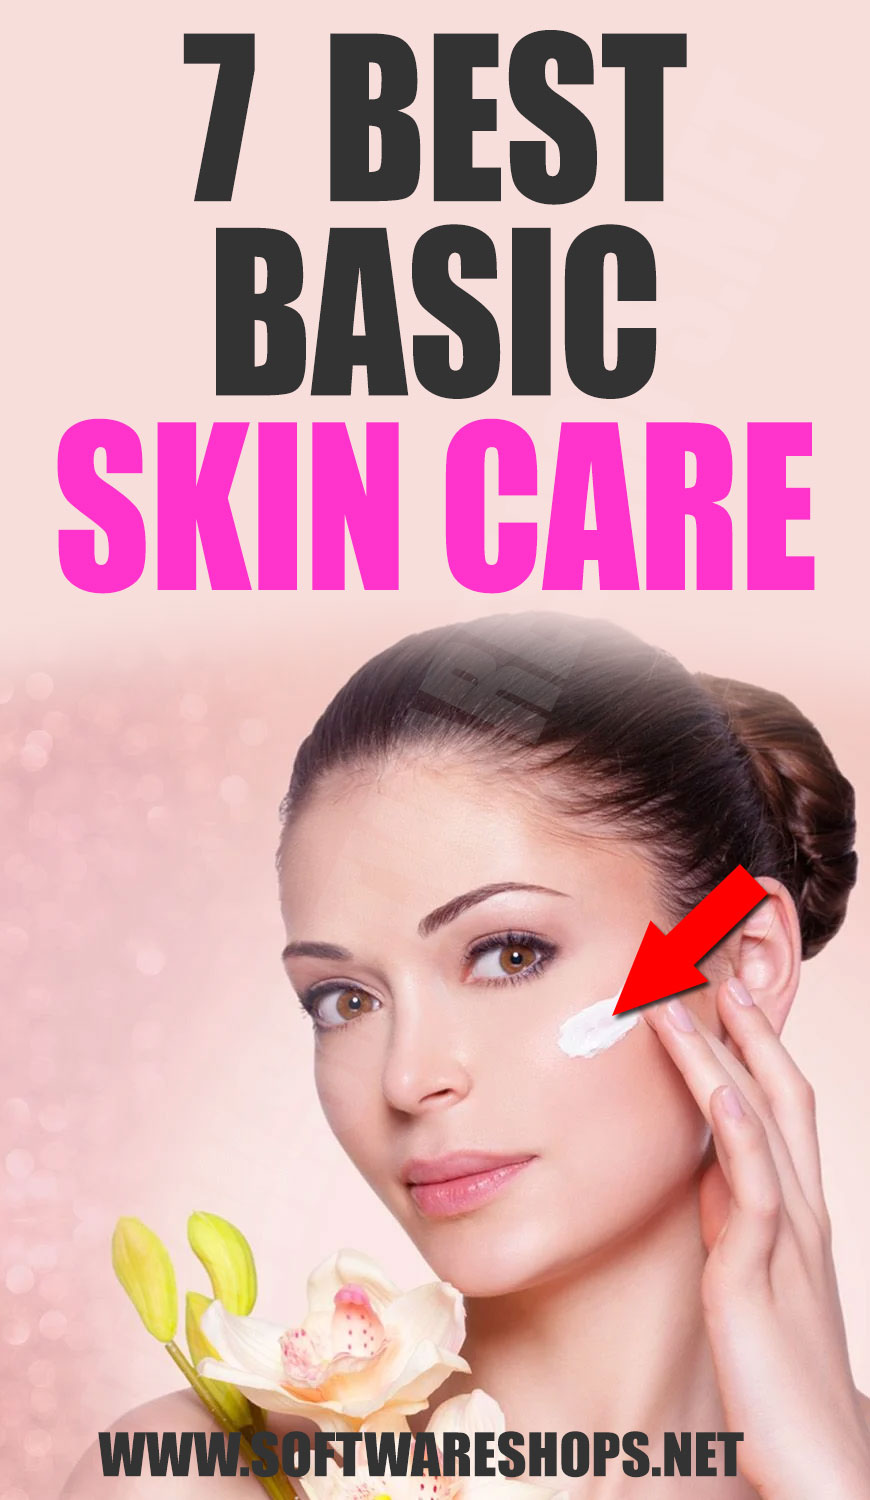 7 Best Basic Skin Care